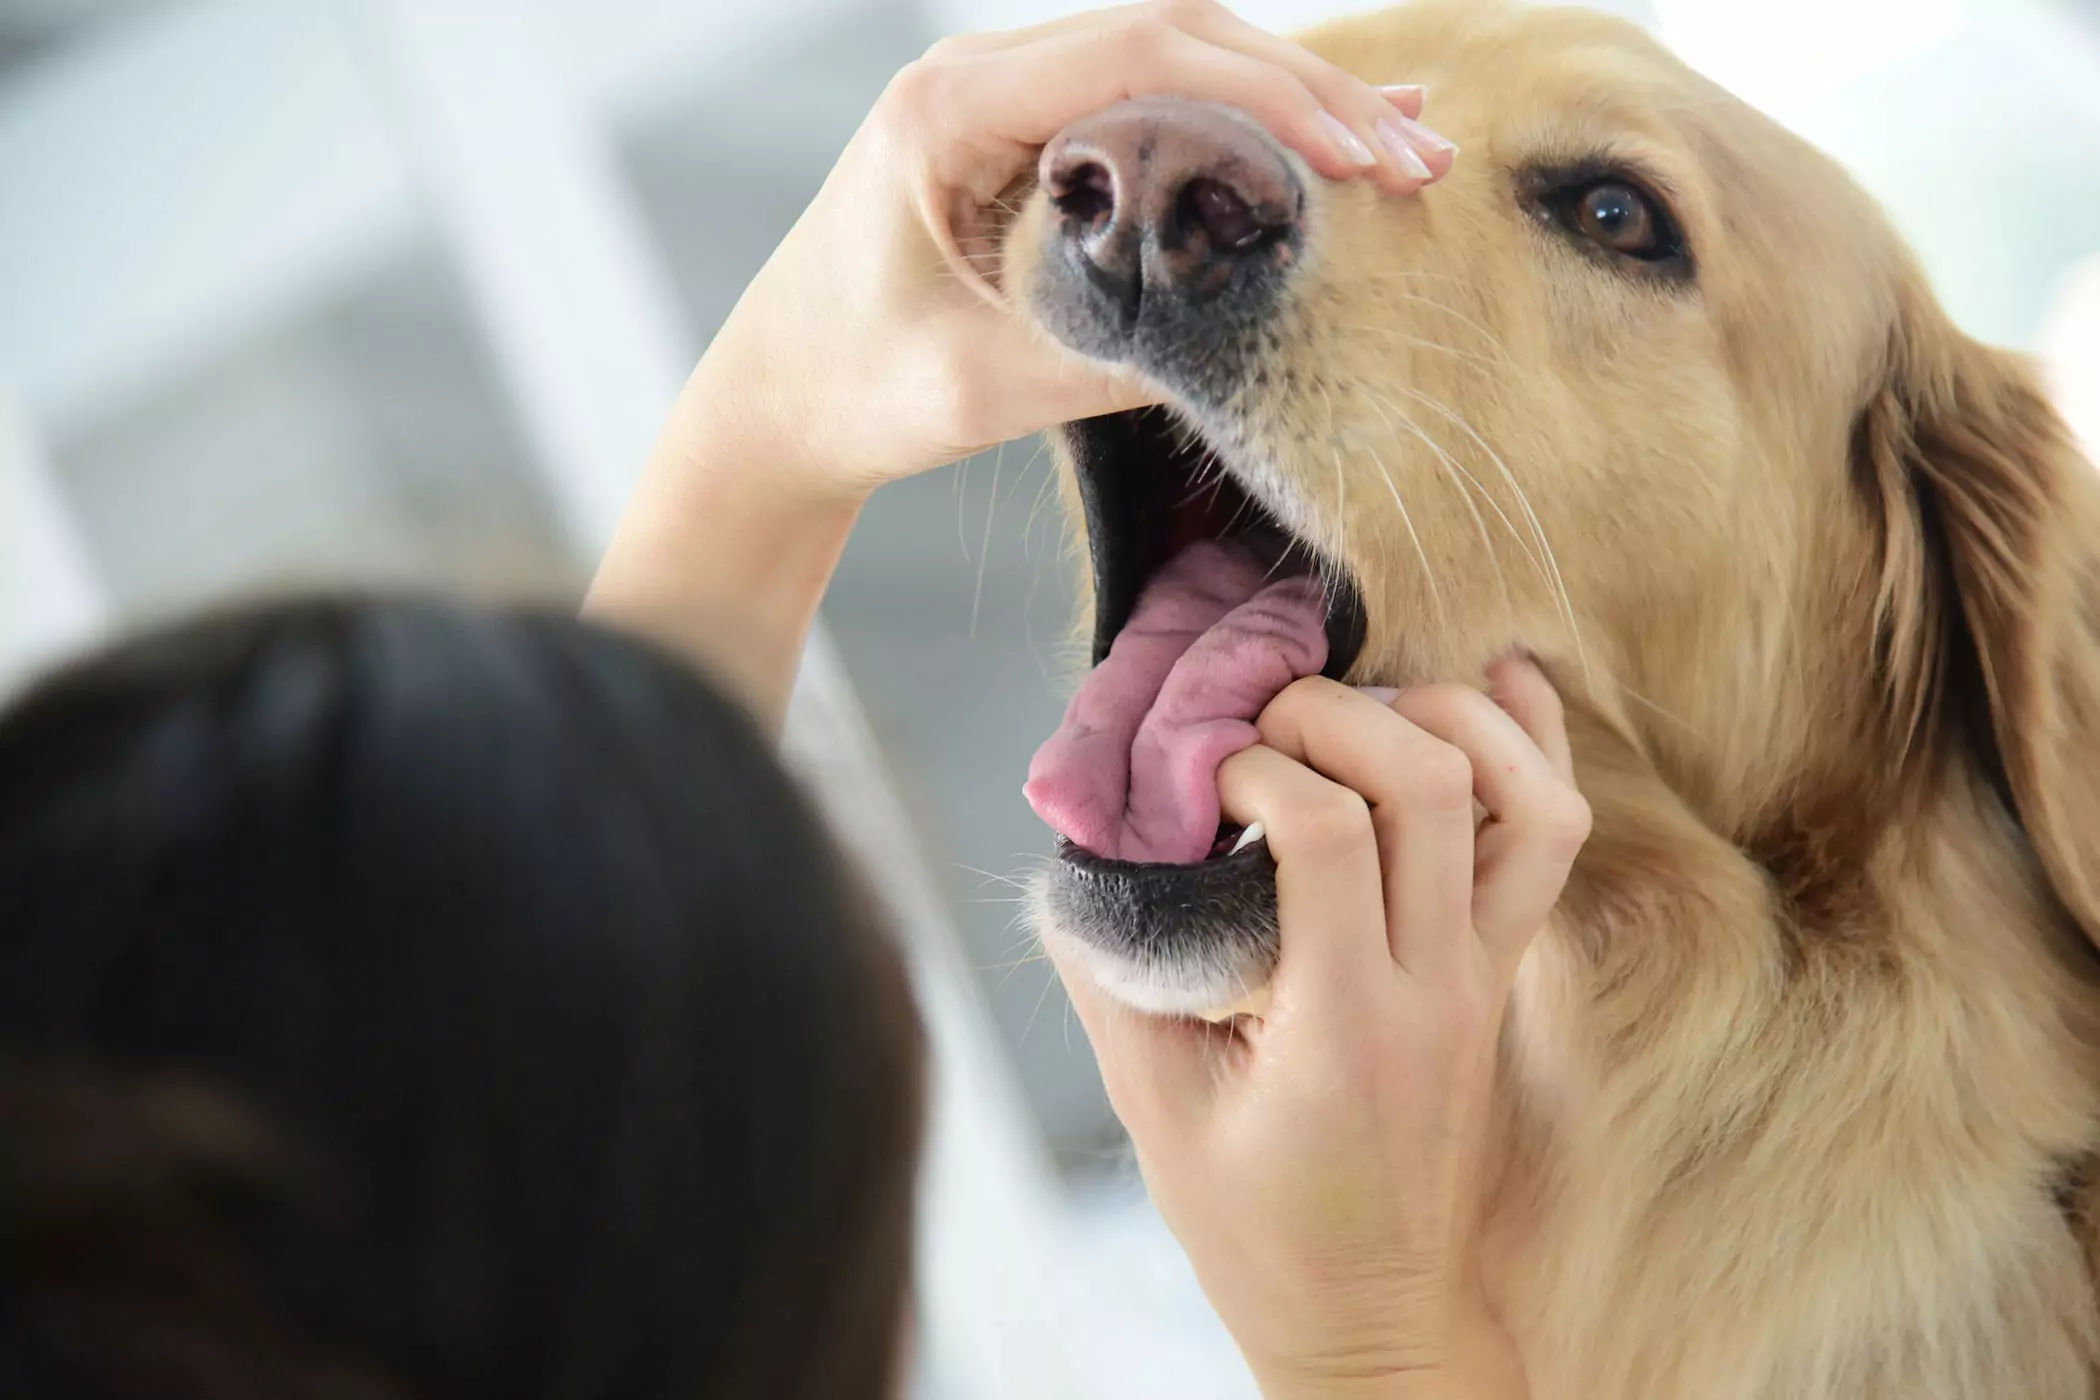 Is de mond van een hond schoner dan die van een mens? De mond van een hond is schoner dan die van een mens? Dit is een gestolen concept, de twee zijn niet te vergelijken